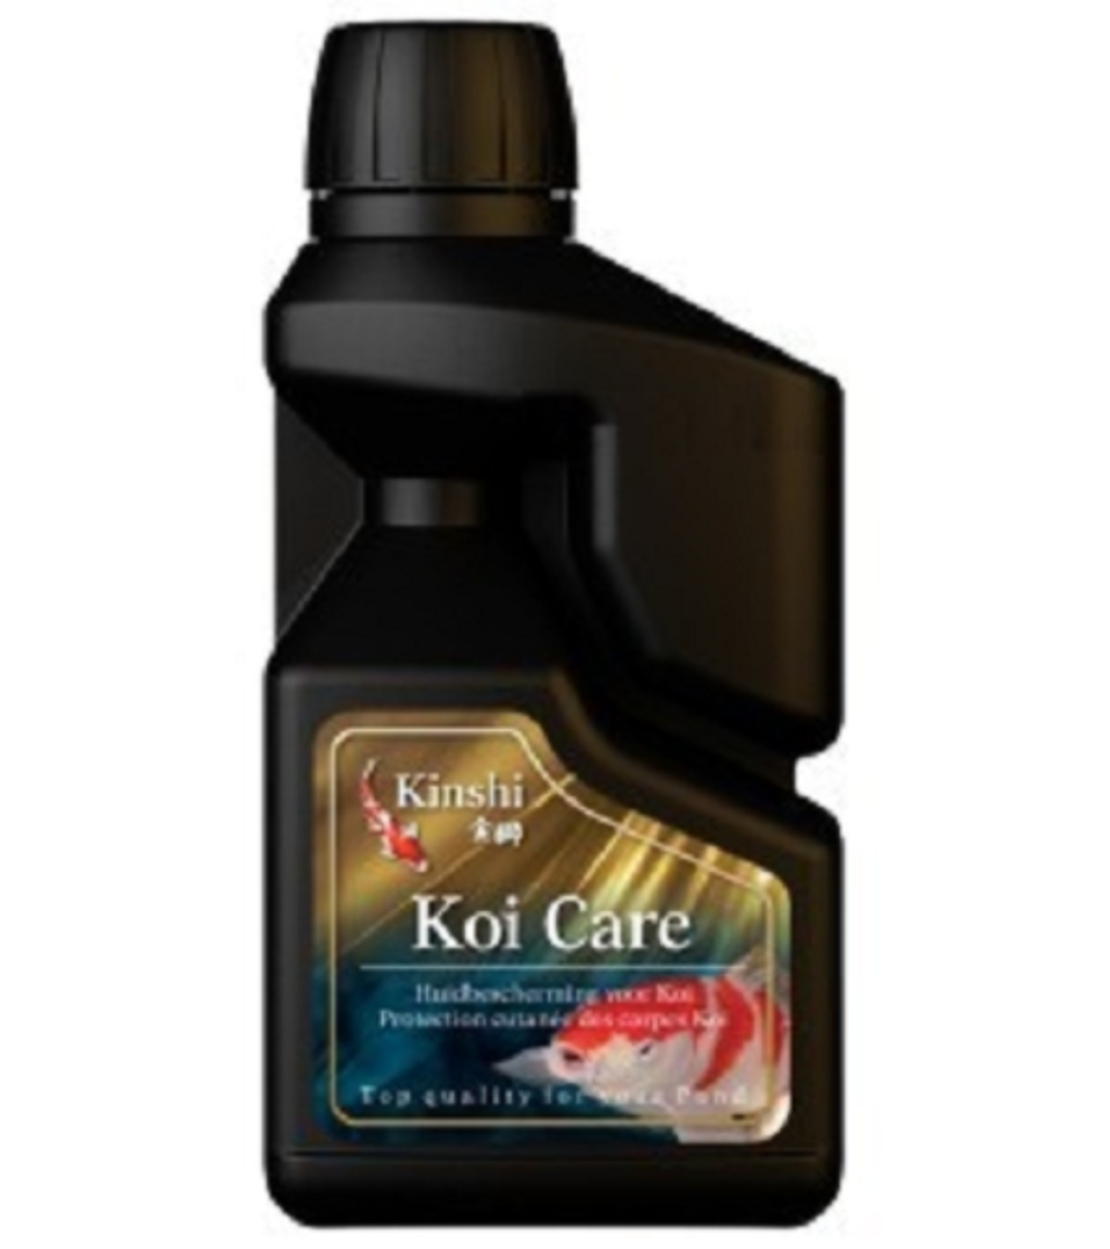 KINSHI KOI CARE 1,000 ML | תוסף לאתחול הפילטרציה הביולוגית